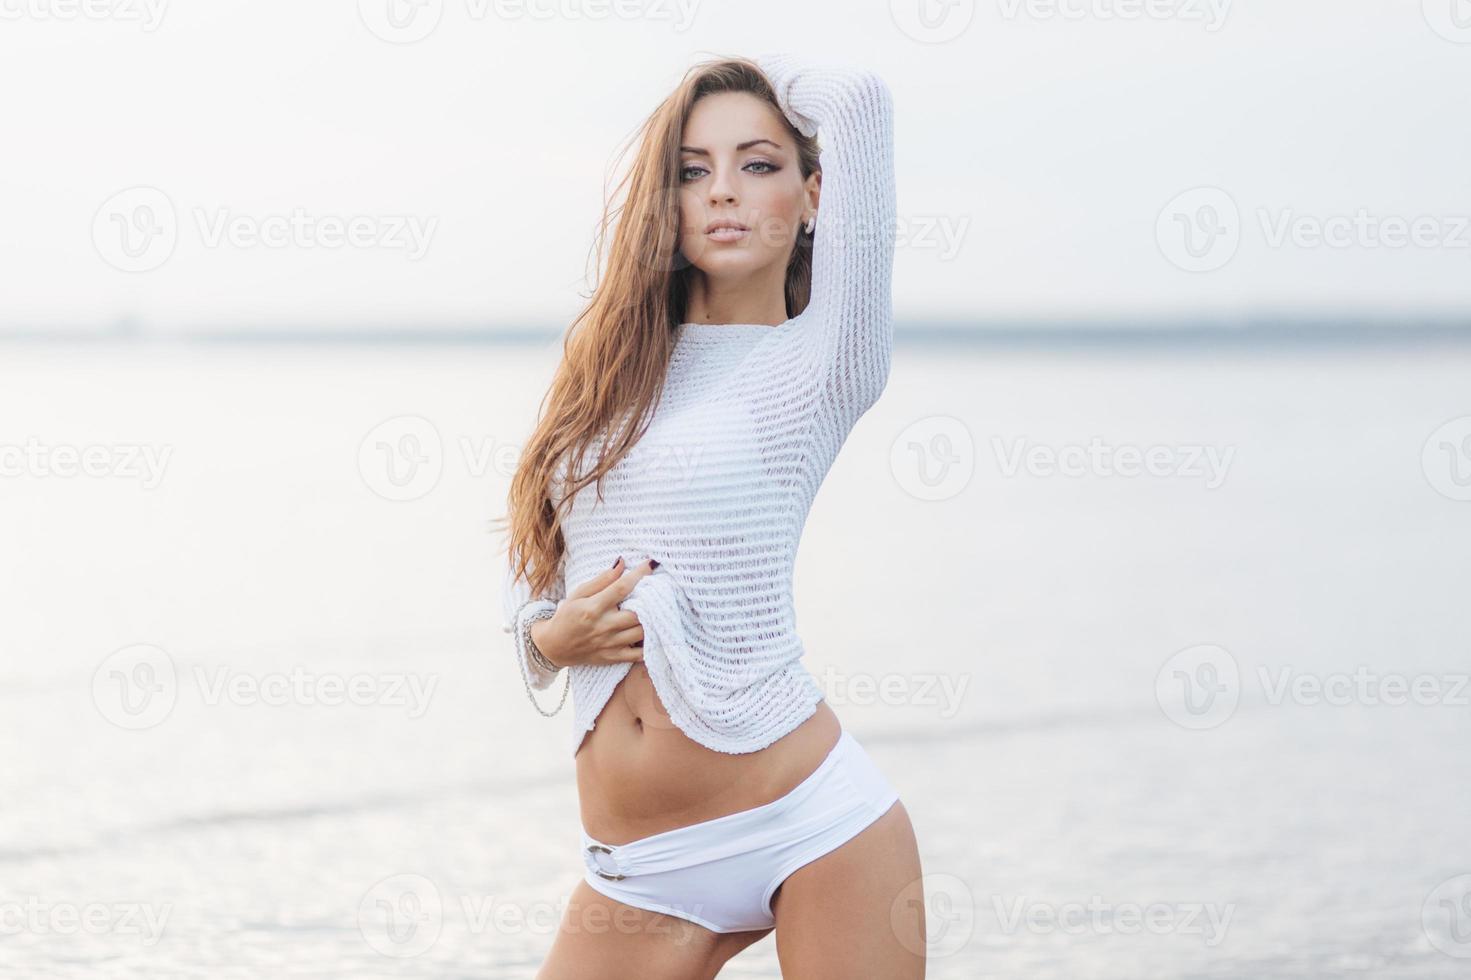 photo d'une jolie jeune femme aux cheveux longs, d'apparence agréable, montre son ventre mince, porte un pull blanc, pose sur un magnifique fond marin. jolis modèles féminins mignons en plein air près de l'océan